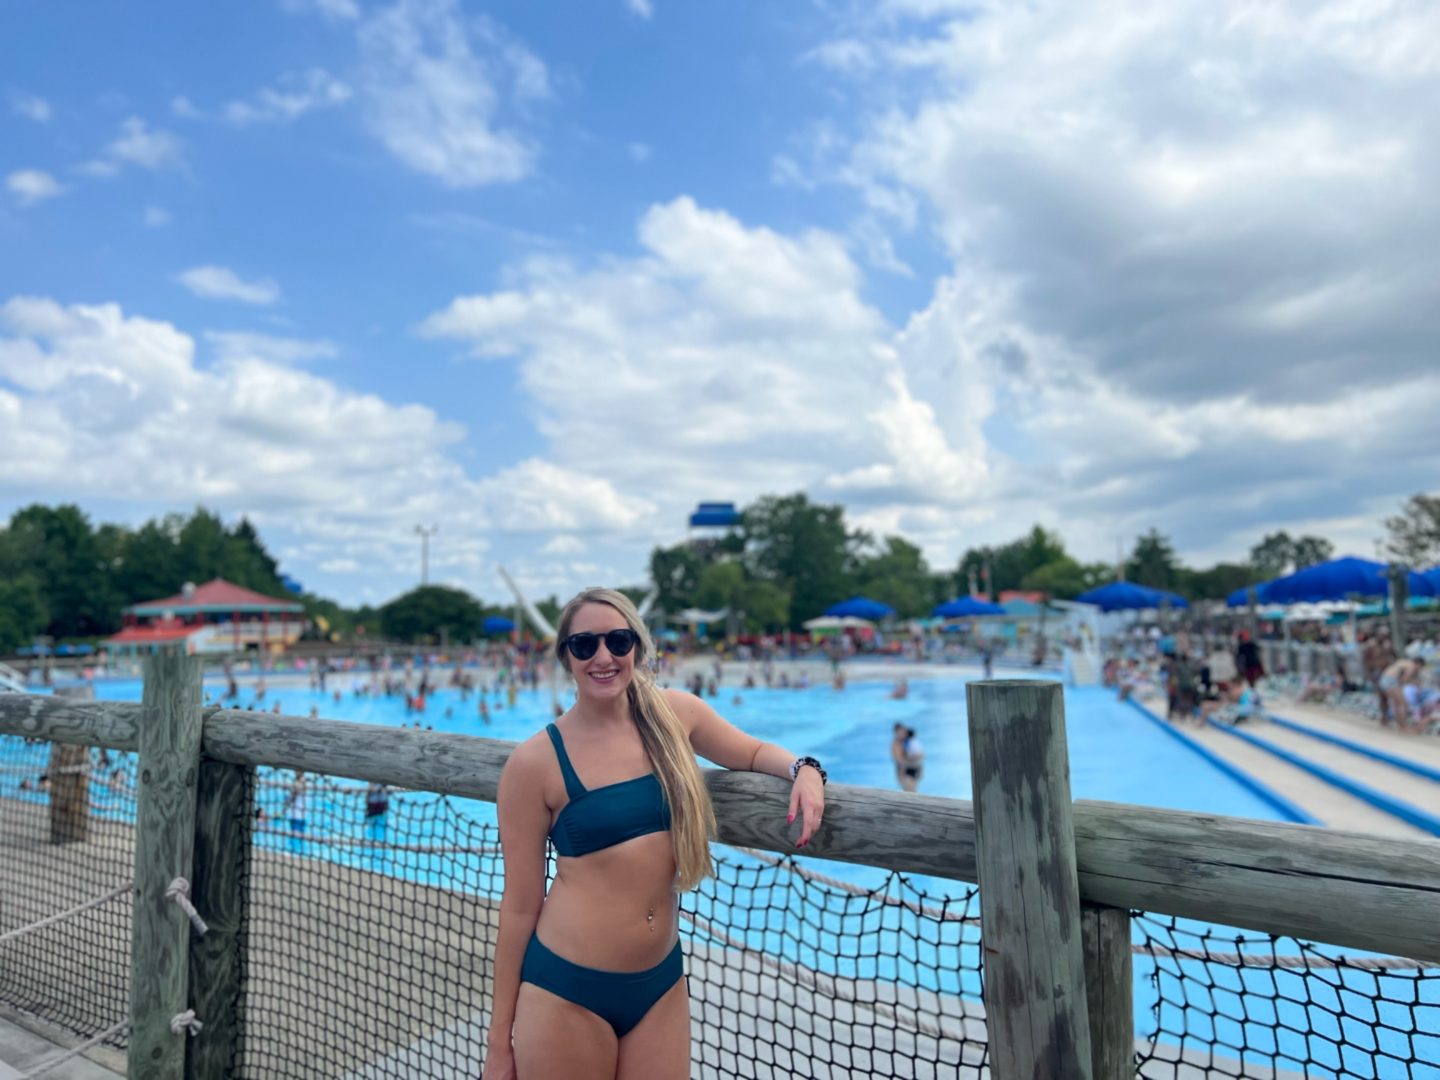 Splash into Summer Fun at Wet ‘n Wild Emerald Pointe